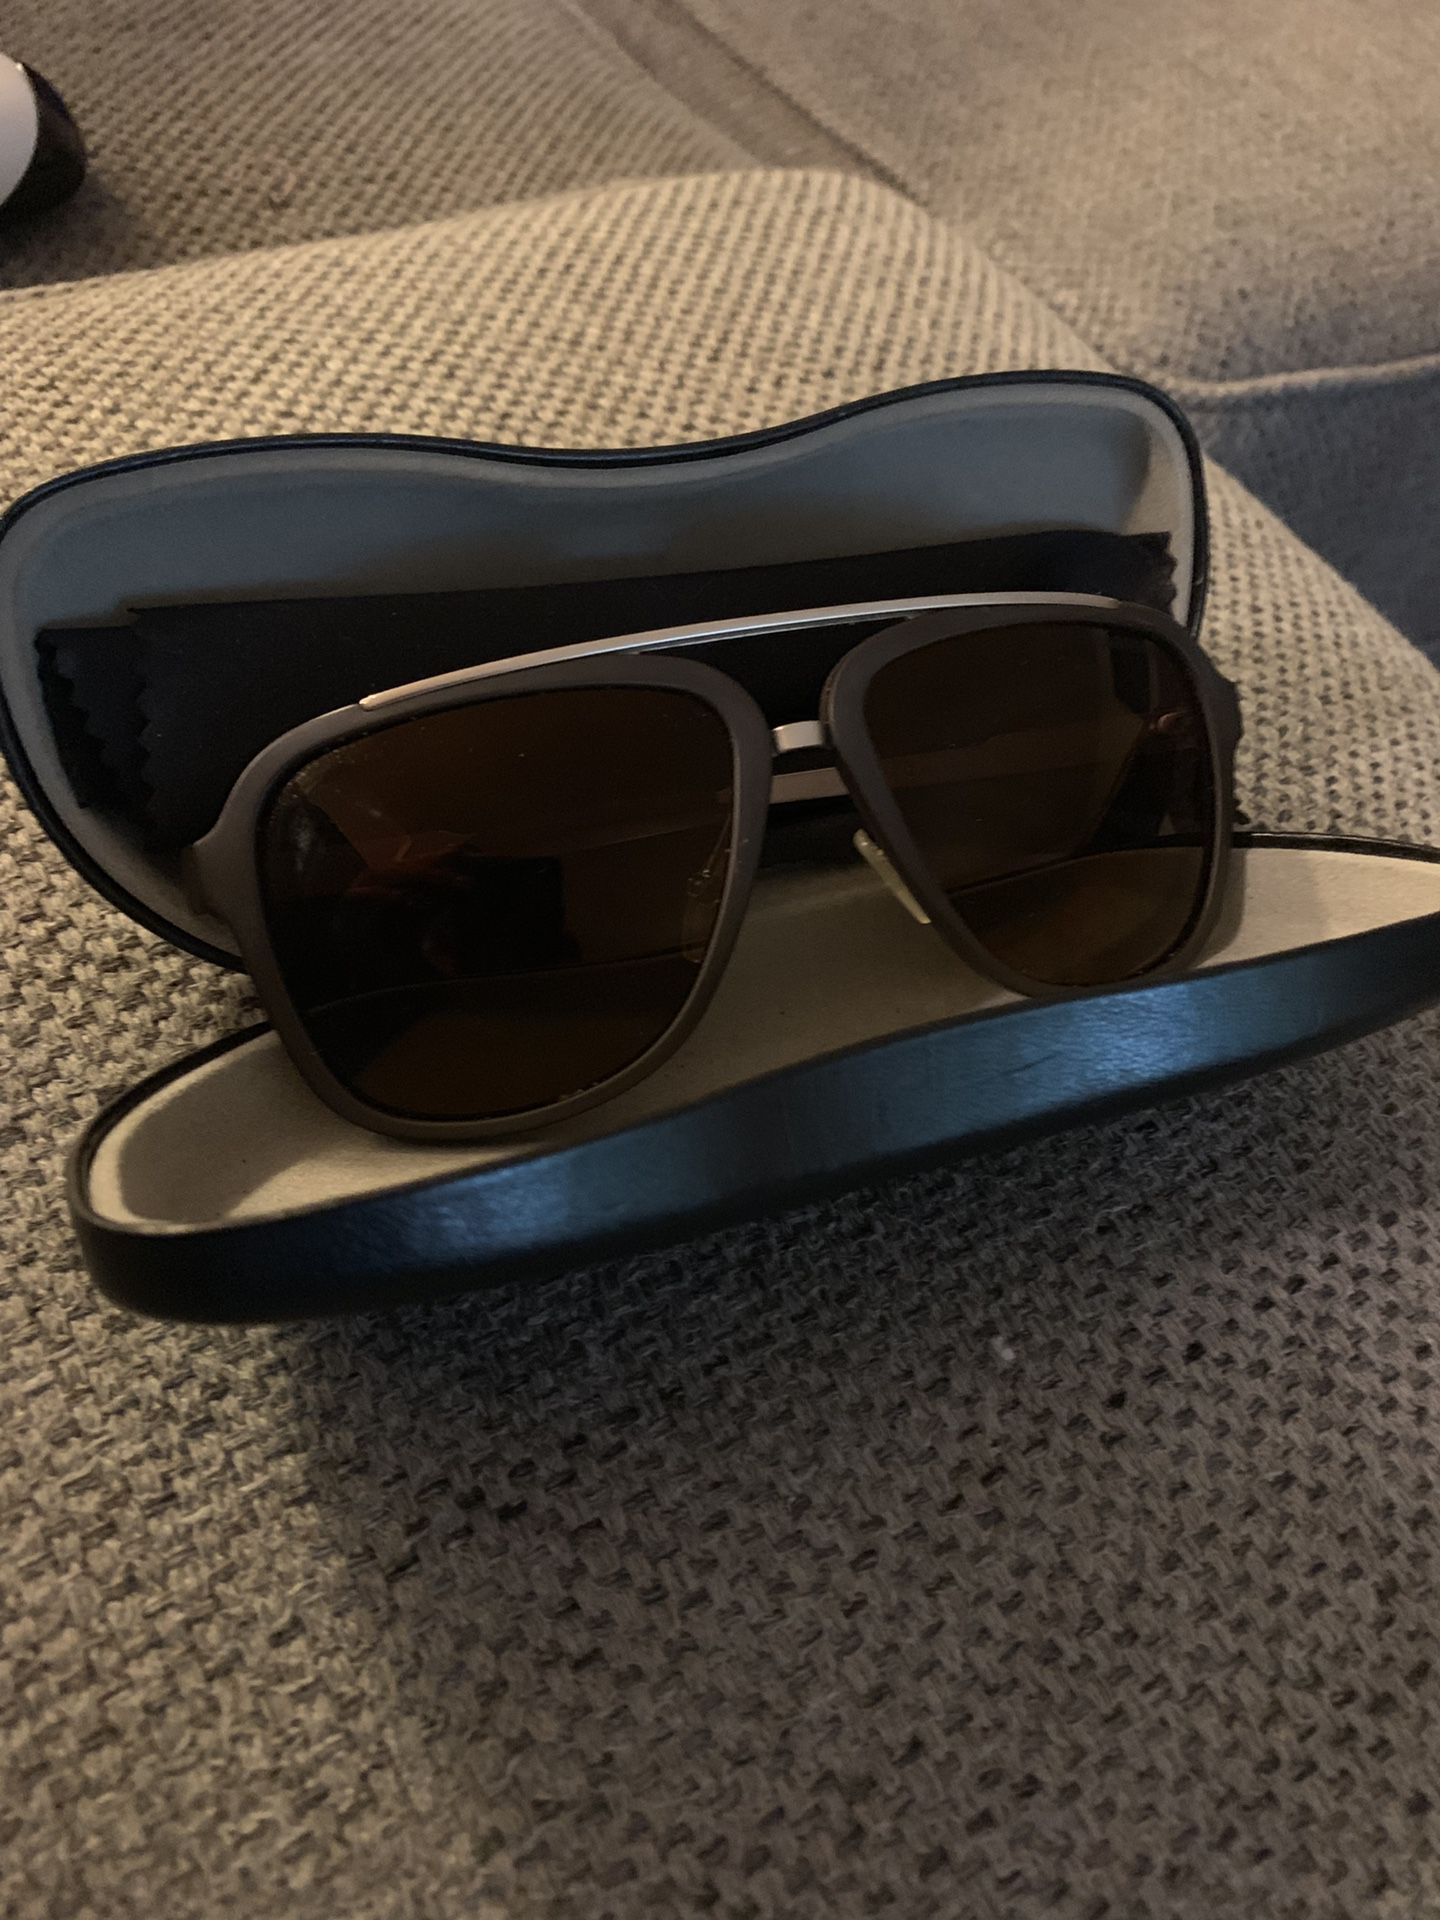 Authentic Carrera Aviator Sunglasses